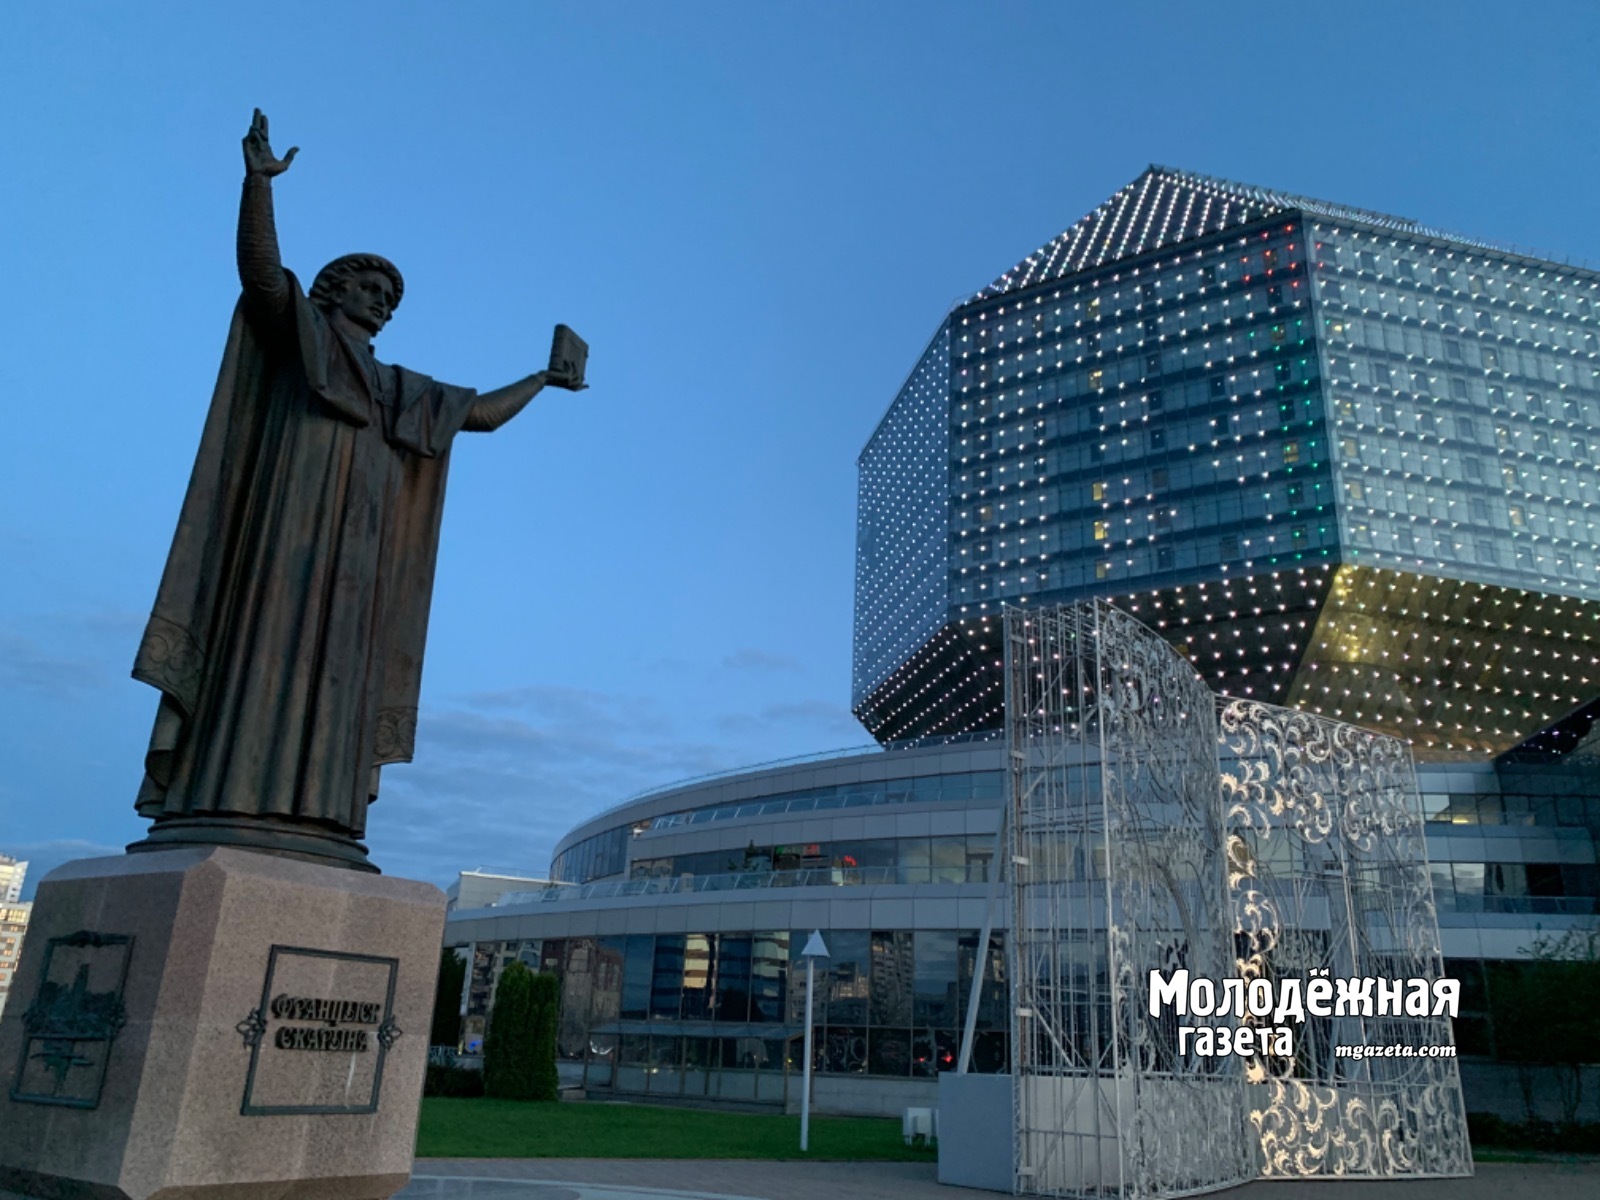 Национальную библиотеку Беларуси, построенную в форме ромбокубооктаэдра,  в народе называют «алмазом». Уникальная по архитектуре конструкция переливается гранями и на солнце, и ночью, подсвечиваемая диодами. Ее высота 74 метра, а вес - 115 тысяч тонн! Она занимает почетное 24-е место в списке 50 самых необычных сооружений мира. Занимала она и первое место в рейтинге самых красивых библиотек мира. Библиотечный фонд составляет около 10 млн единиц хранения, в том числе здесь хранится более 90 тысяч редких и старопечатных книг и рукописей, самые ранние из которых датируются XIV–XV вв. В самом здании, помимо библиотеки, расположены несколько музеев и выставок, ресторан«Метрополис», а на крыше — смотровая площадка.